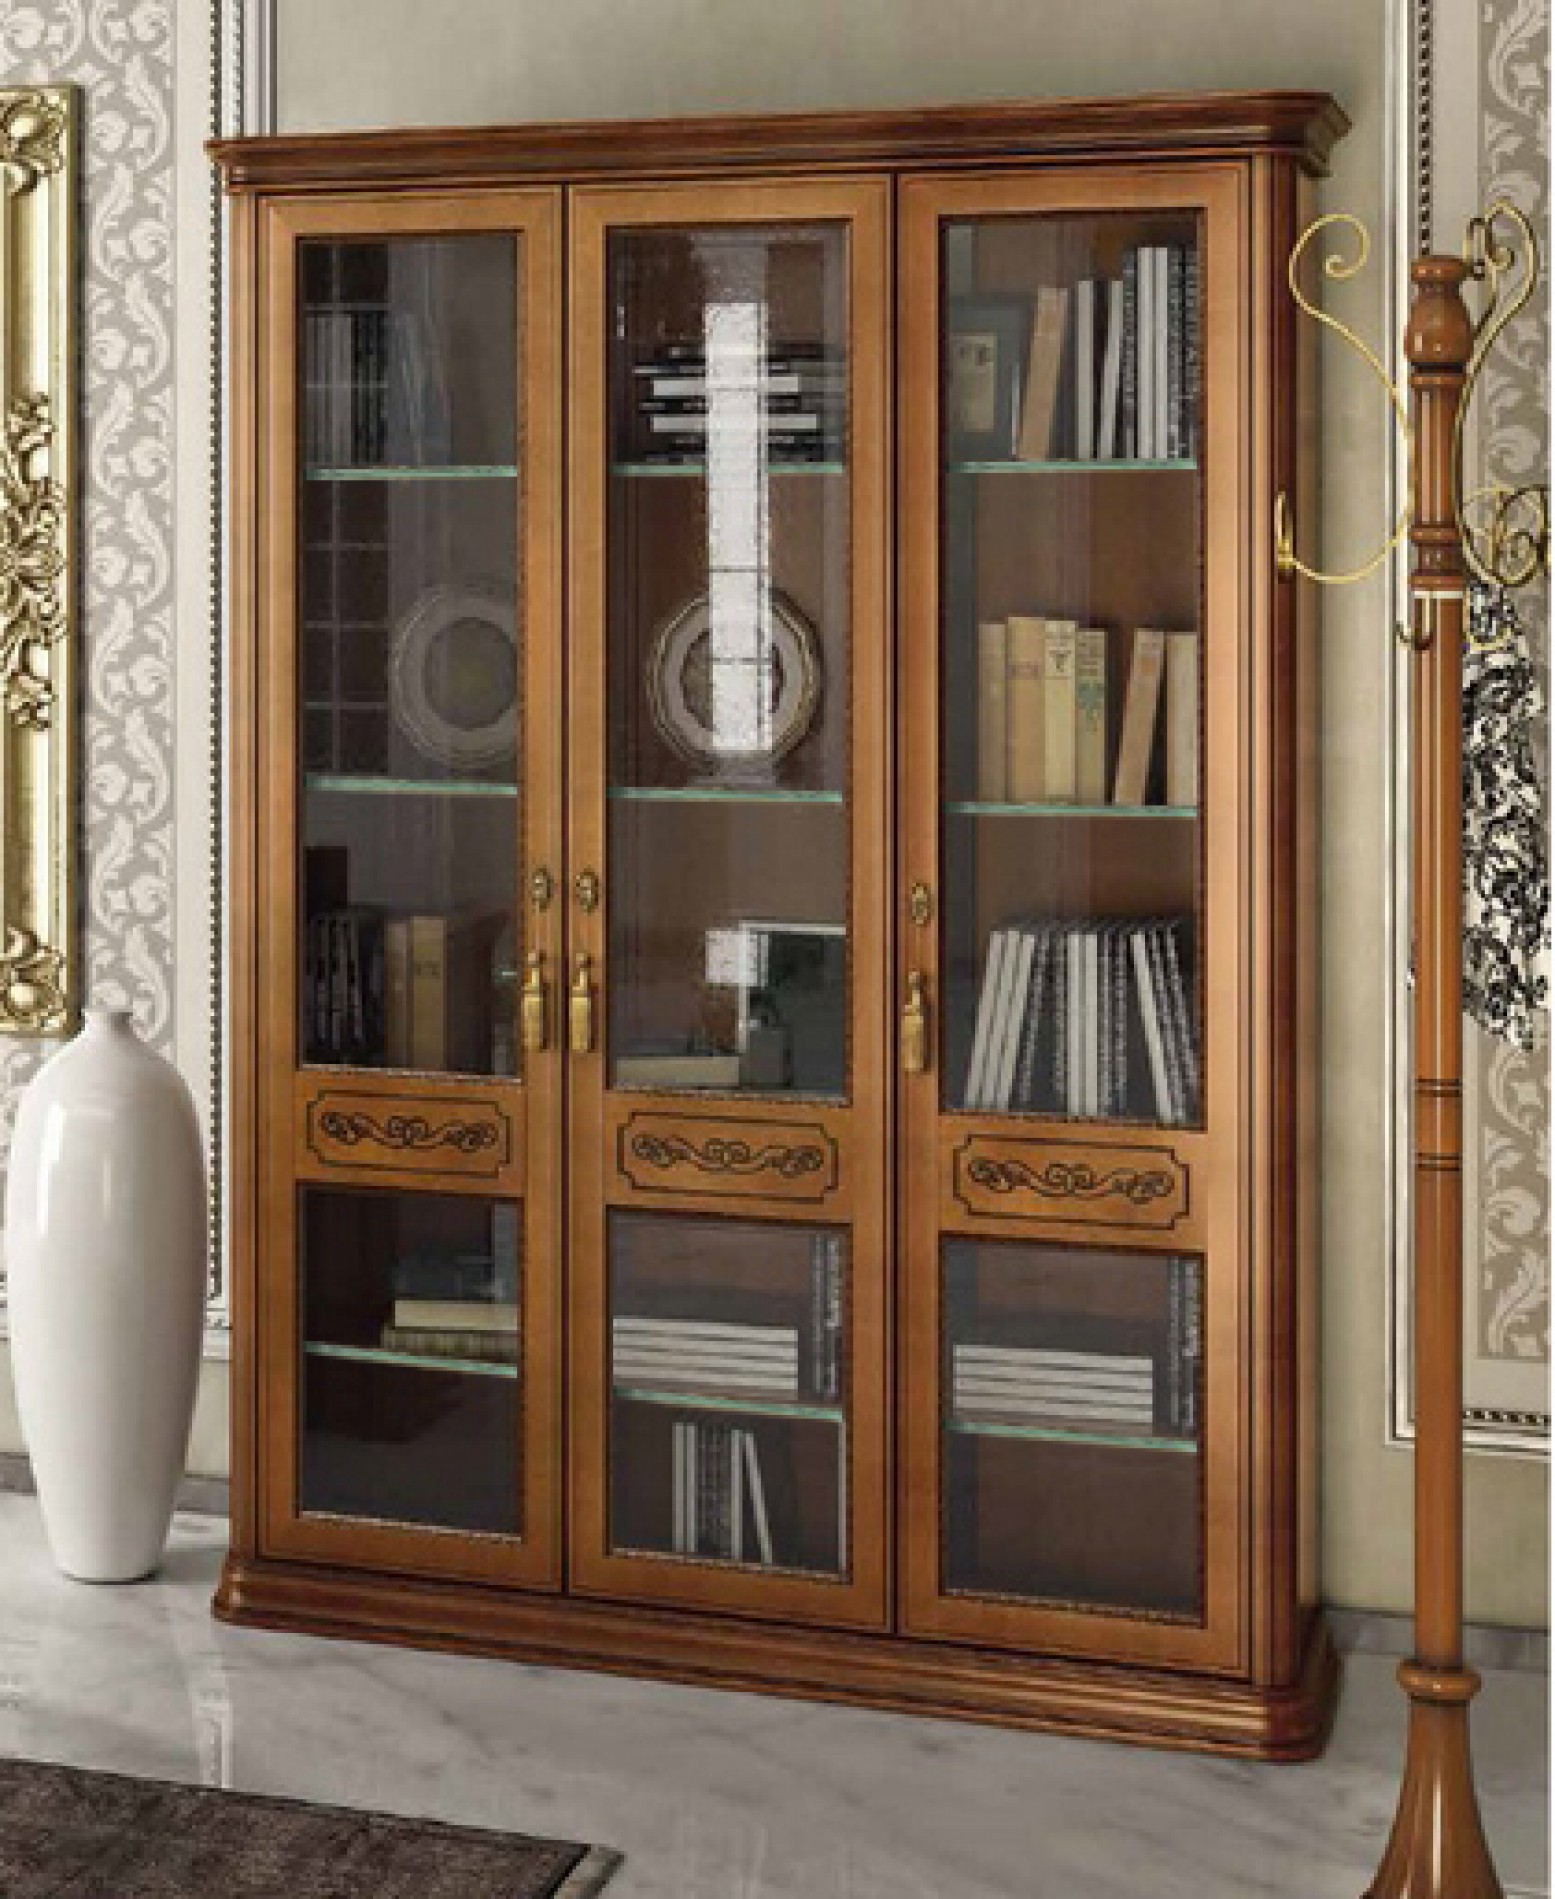 Torriani 3 Door Bookcase W Glass Doors Glass Shelves Walnut Buy